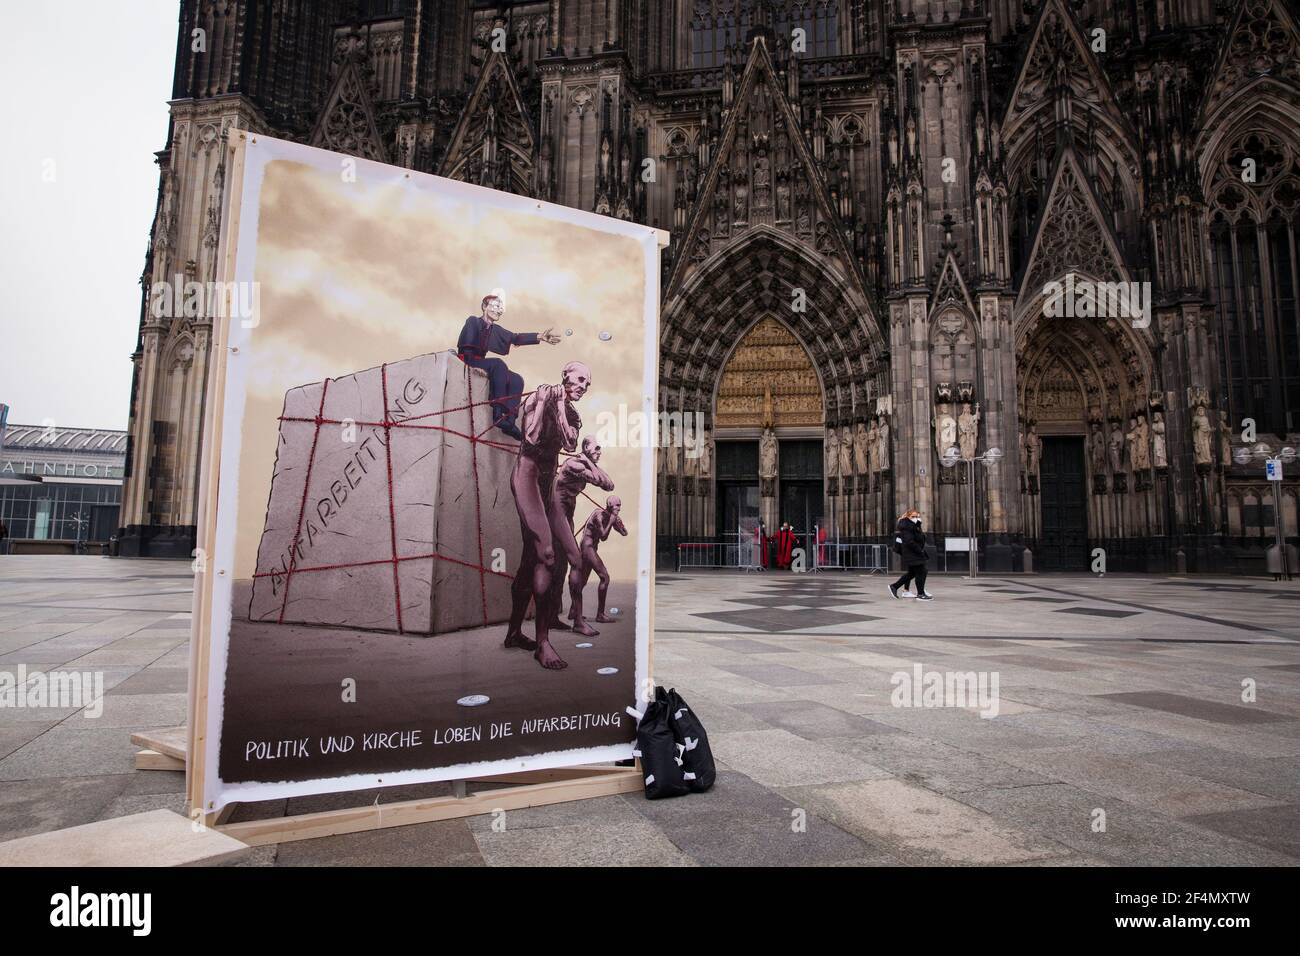 Los representantes de las víctimas protestan contra la vacilante revelación de casos de abuso por parte de funcionarios de la iglesia con un cartel en frente de la catedral, Colonia, Germ Foto de stock